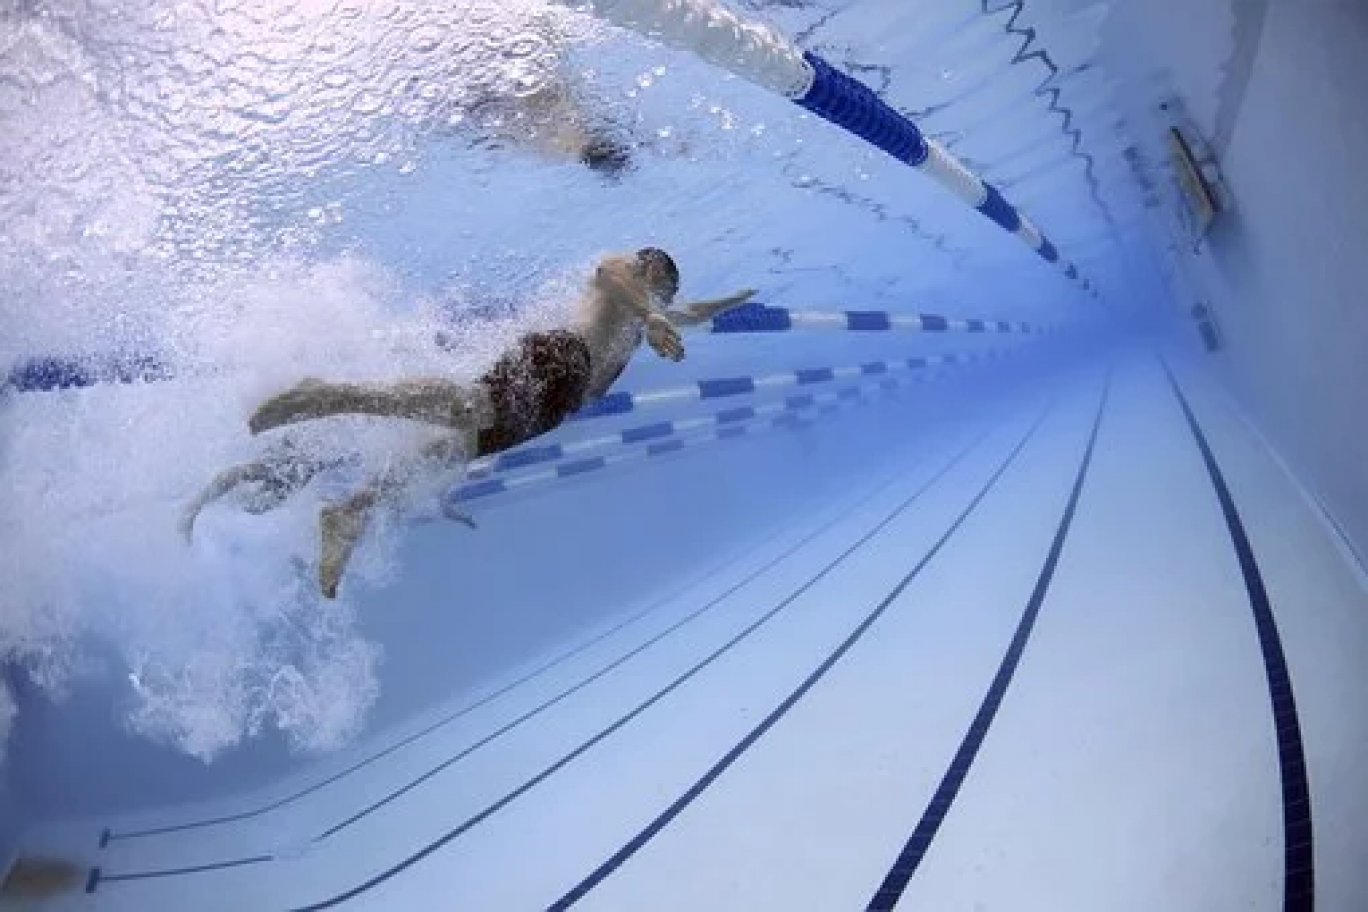 La piscine olympique de Forbach fait peau neuve